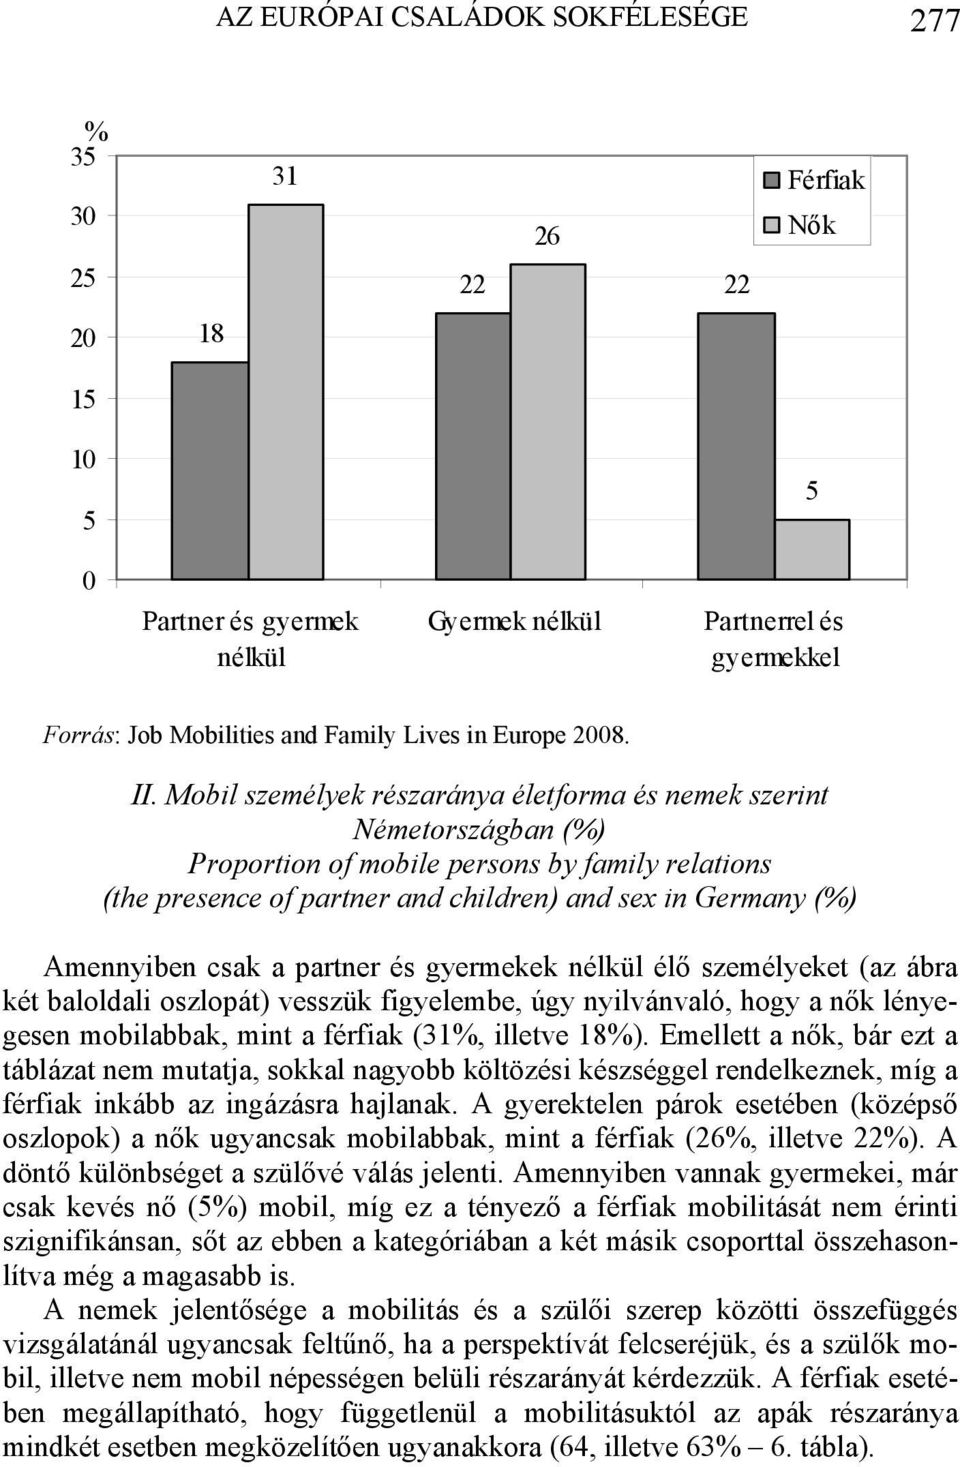 Mobil személyek részaránya életforma és nemek szerint Németországban (%) Proportion of mobile persons by family relations (the presence of partner and children) and sex in Germany (%) Amennyiben csak